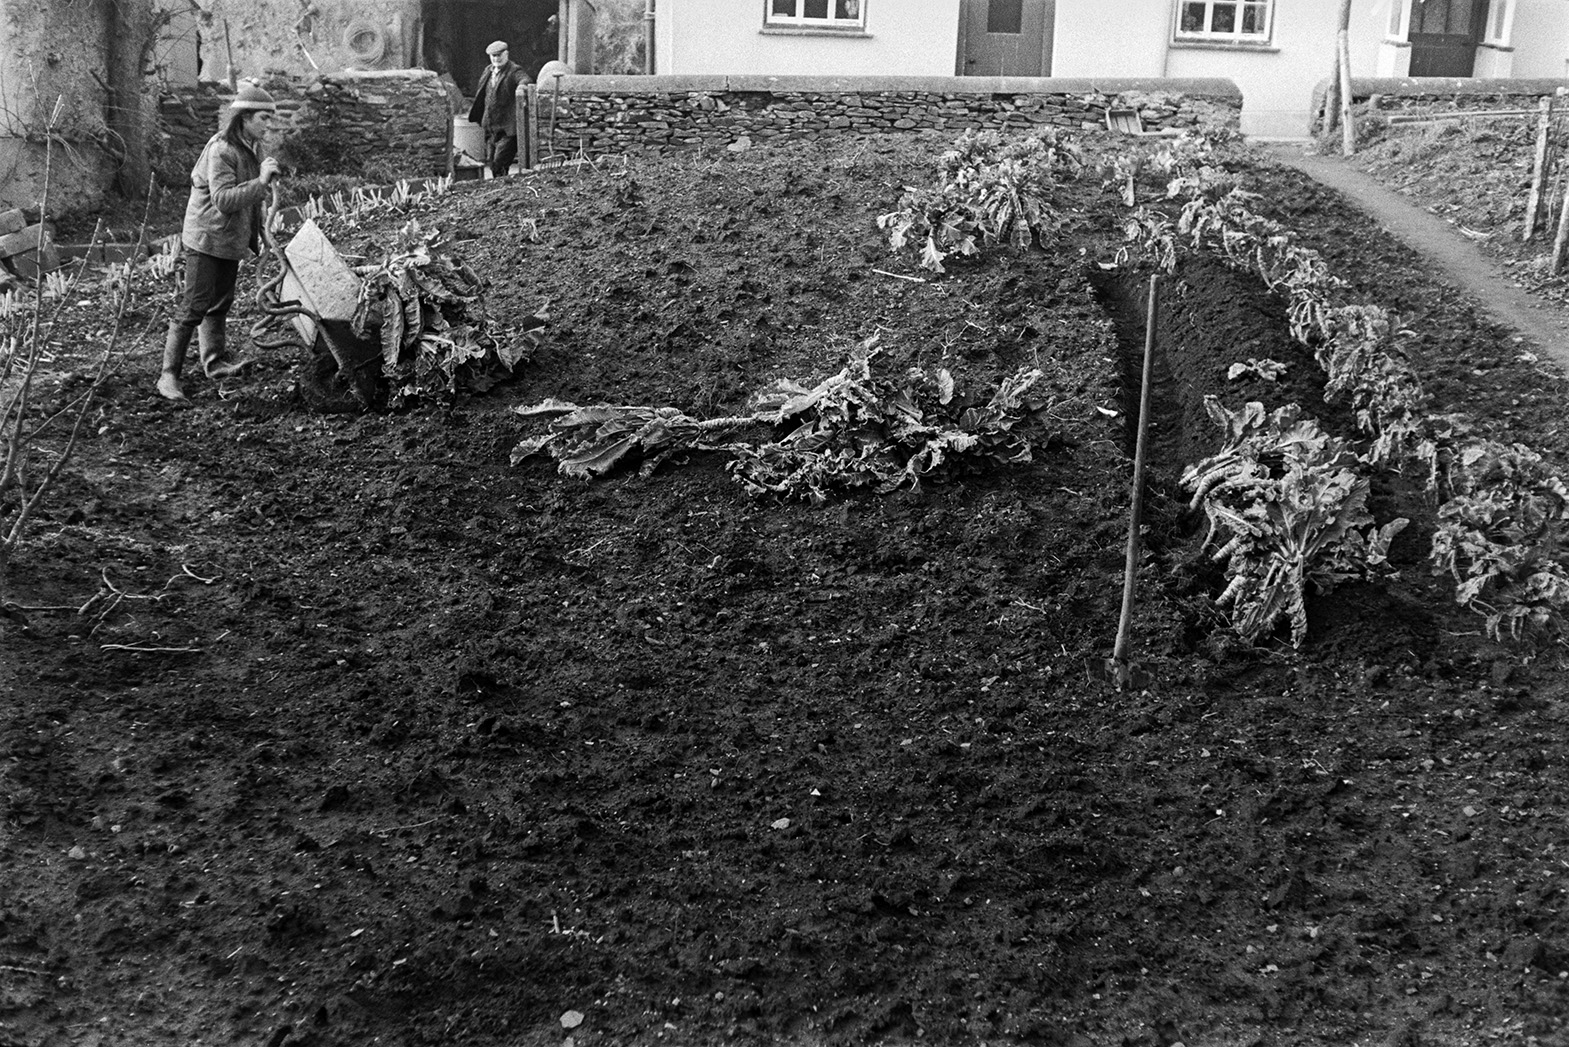 Derek Bright and a man planting cauliflowers into trench in garden. Derek is emptying a wheelbarrow of cauliflowers onto the ground.